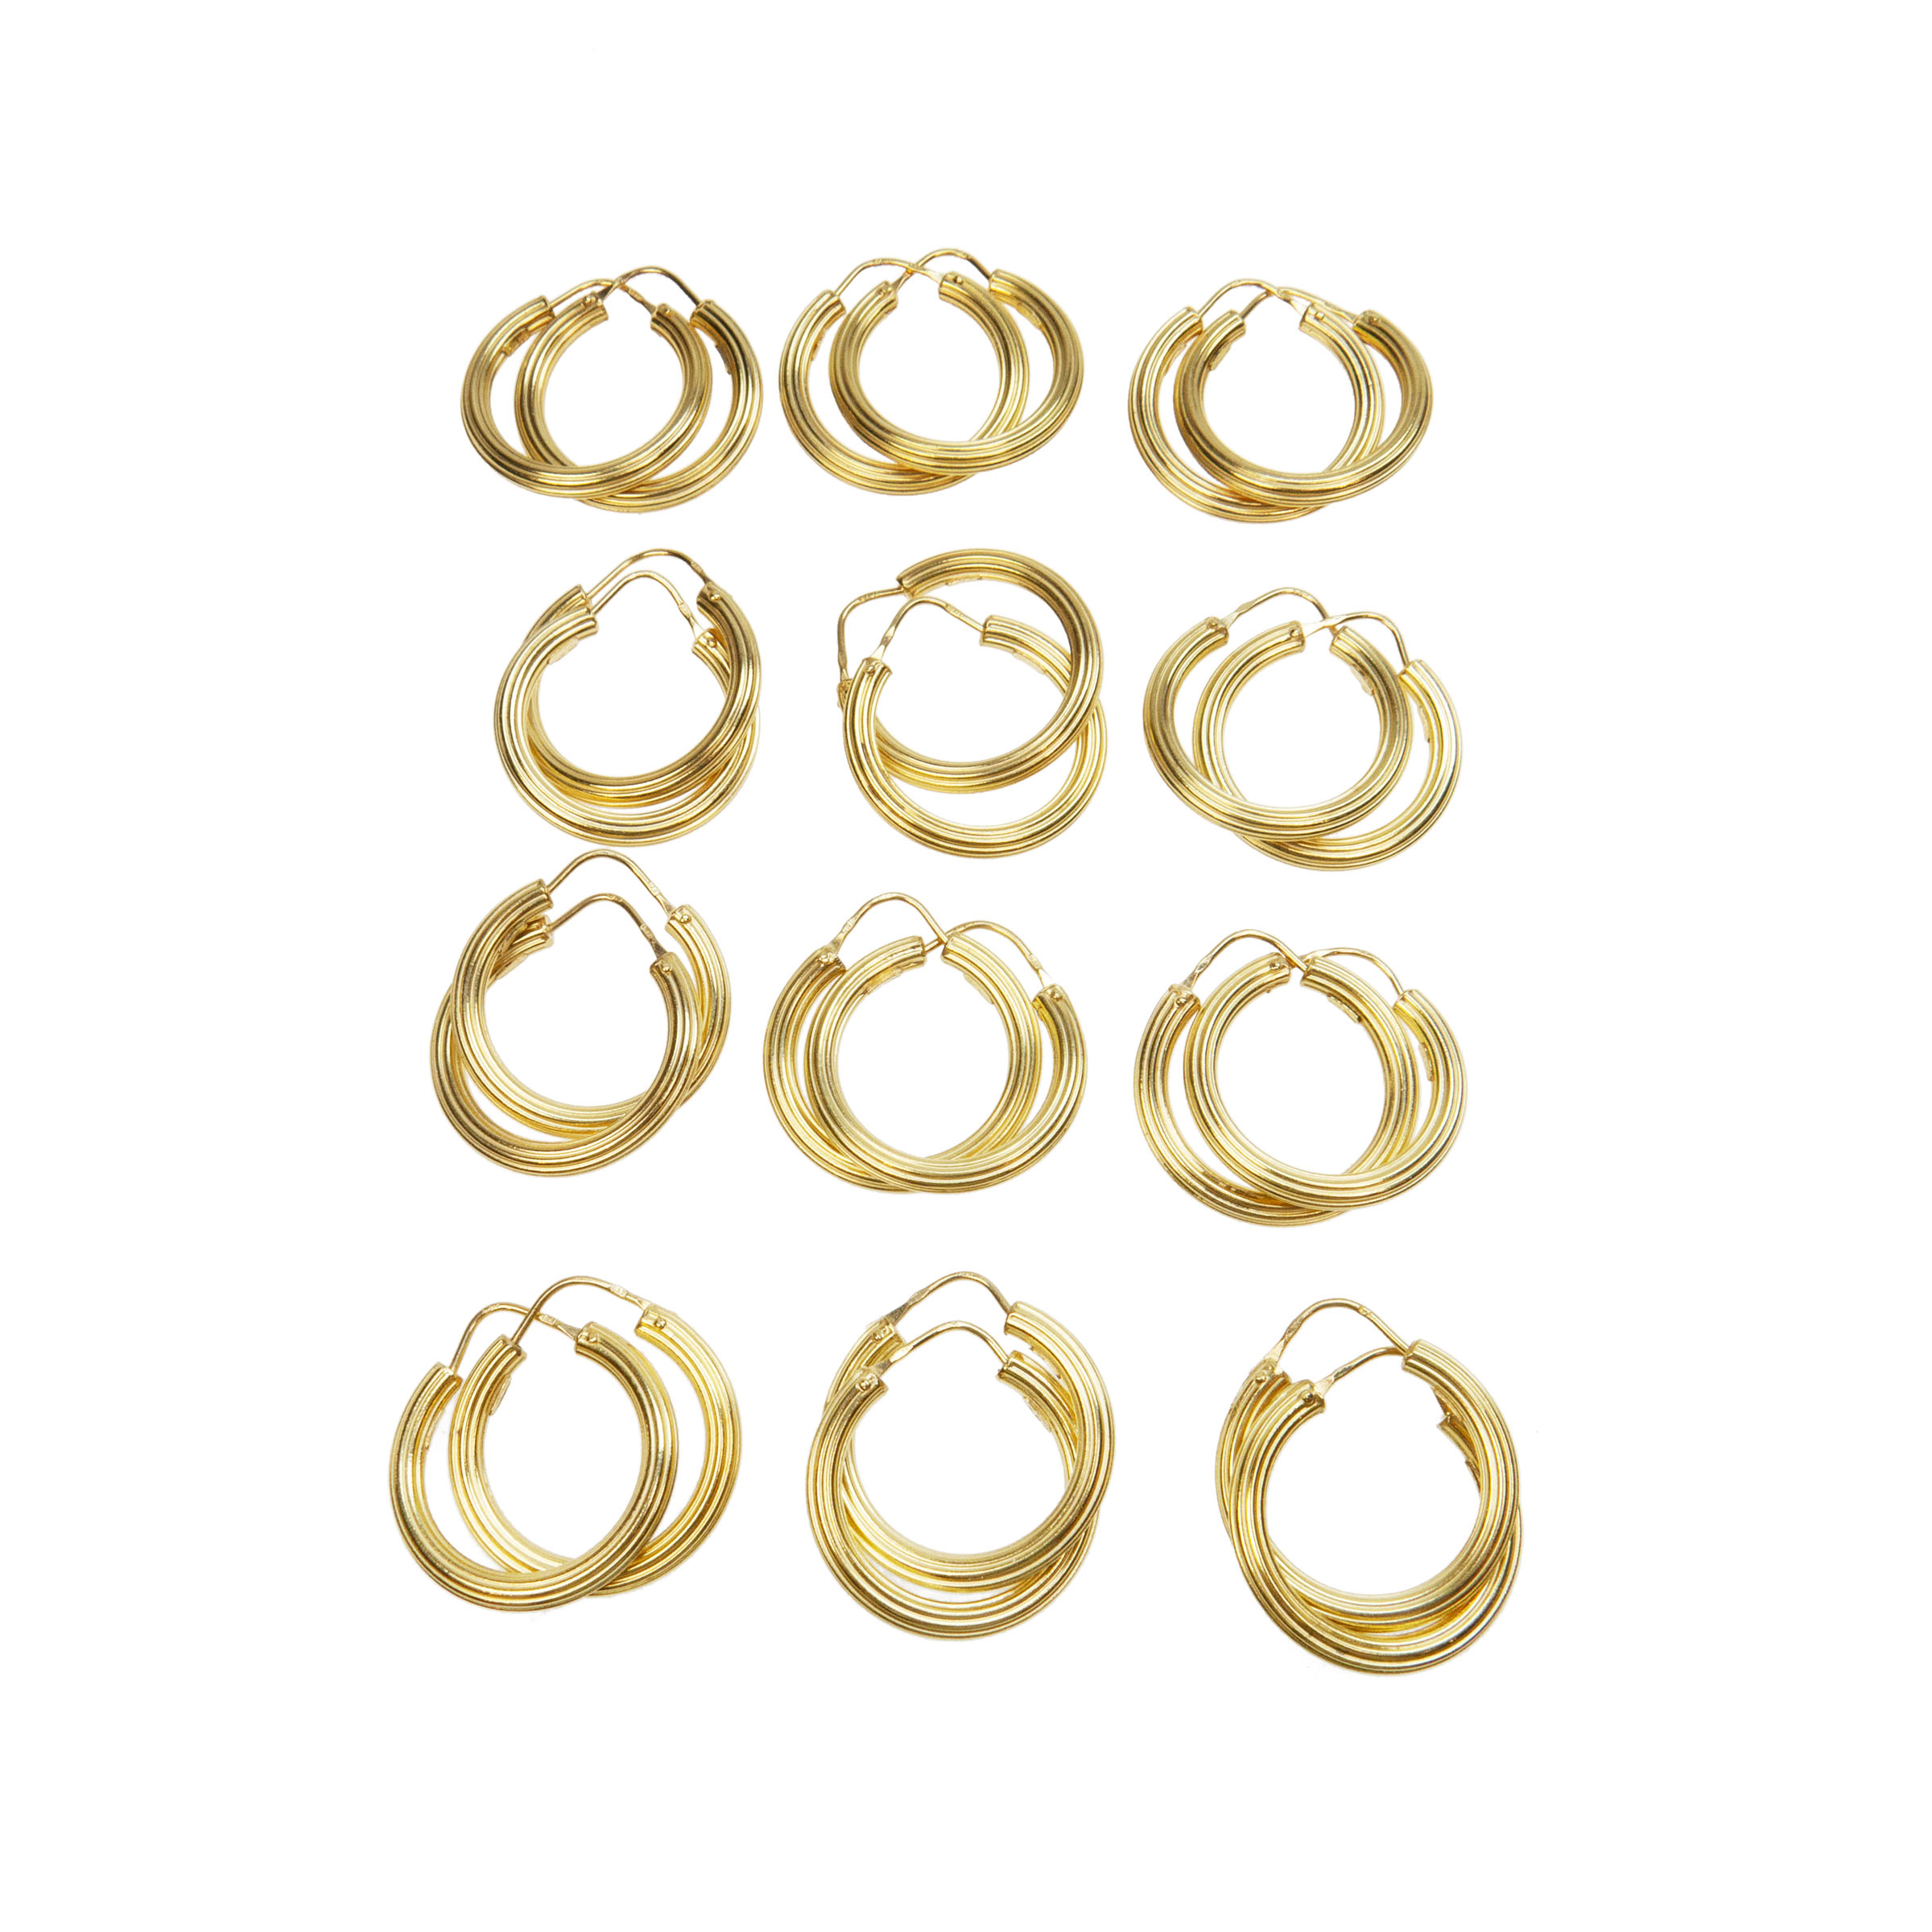 12 X Pairs Of 18K Yellow Gold Hoop Earrings